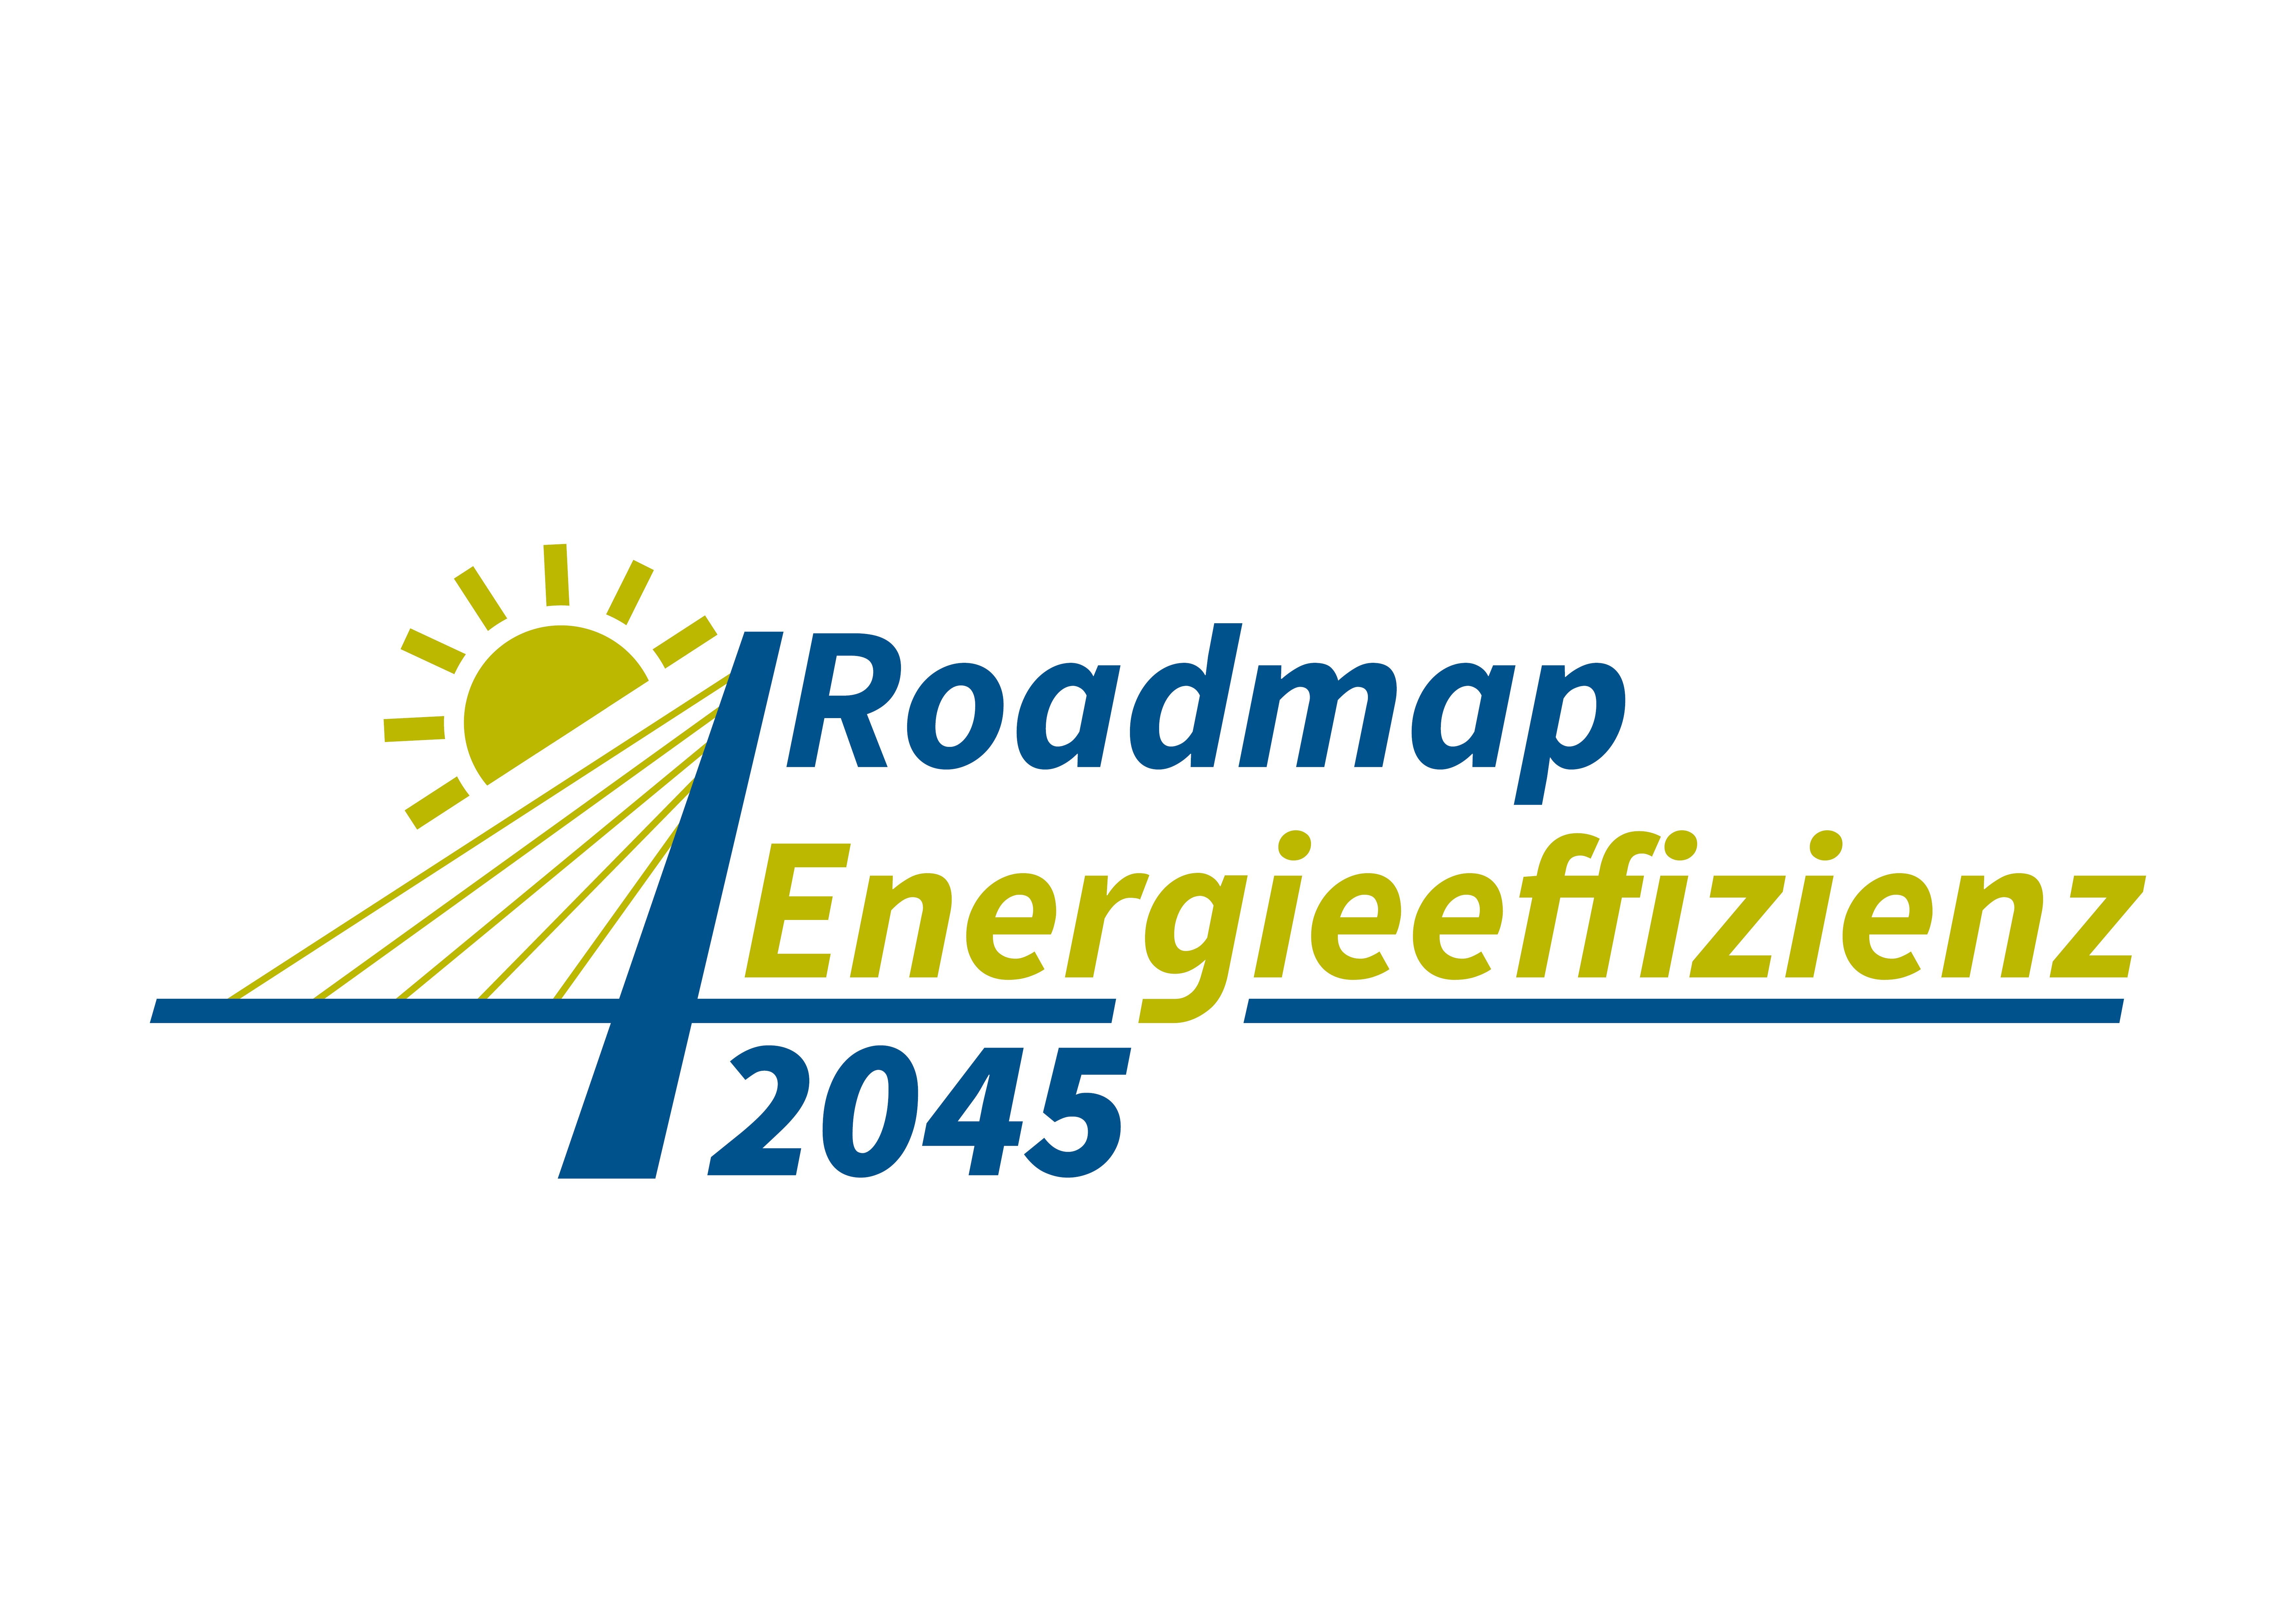 Roadmap Energieeffizienz 2050